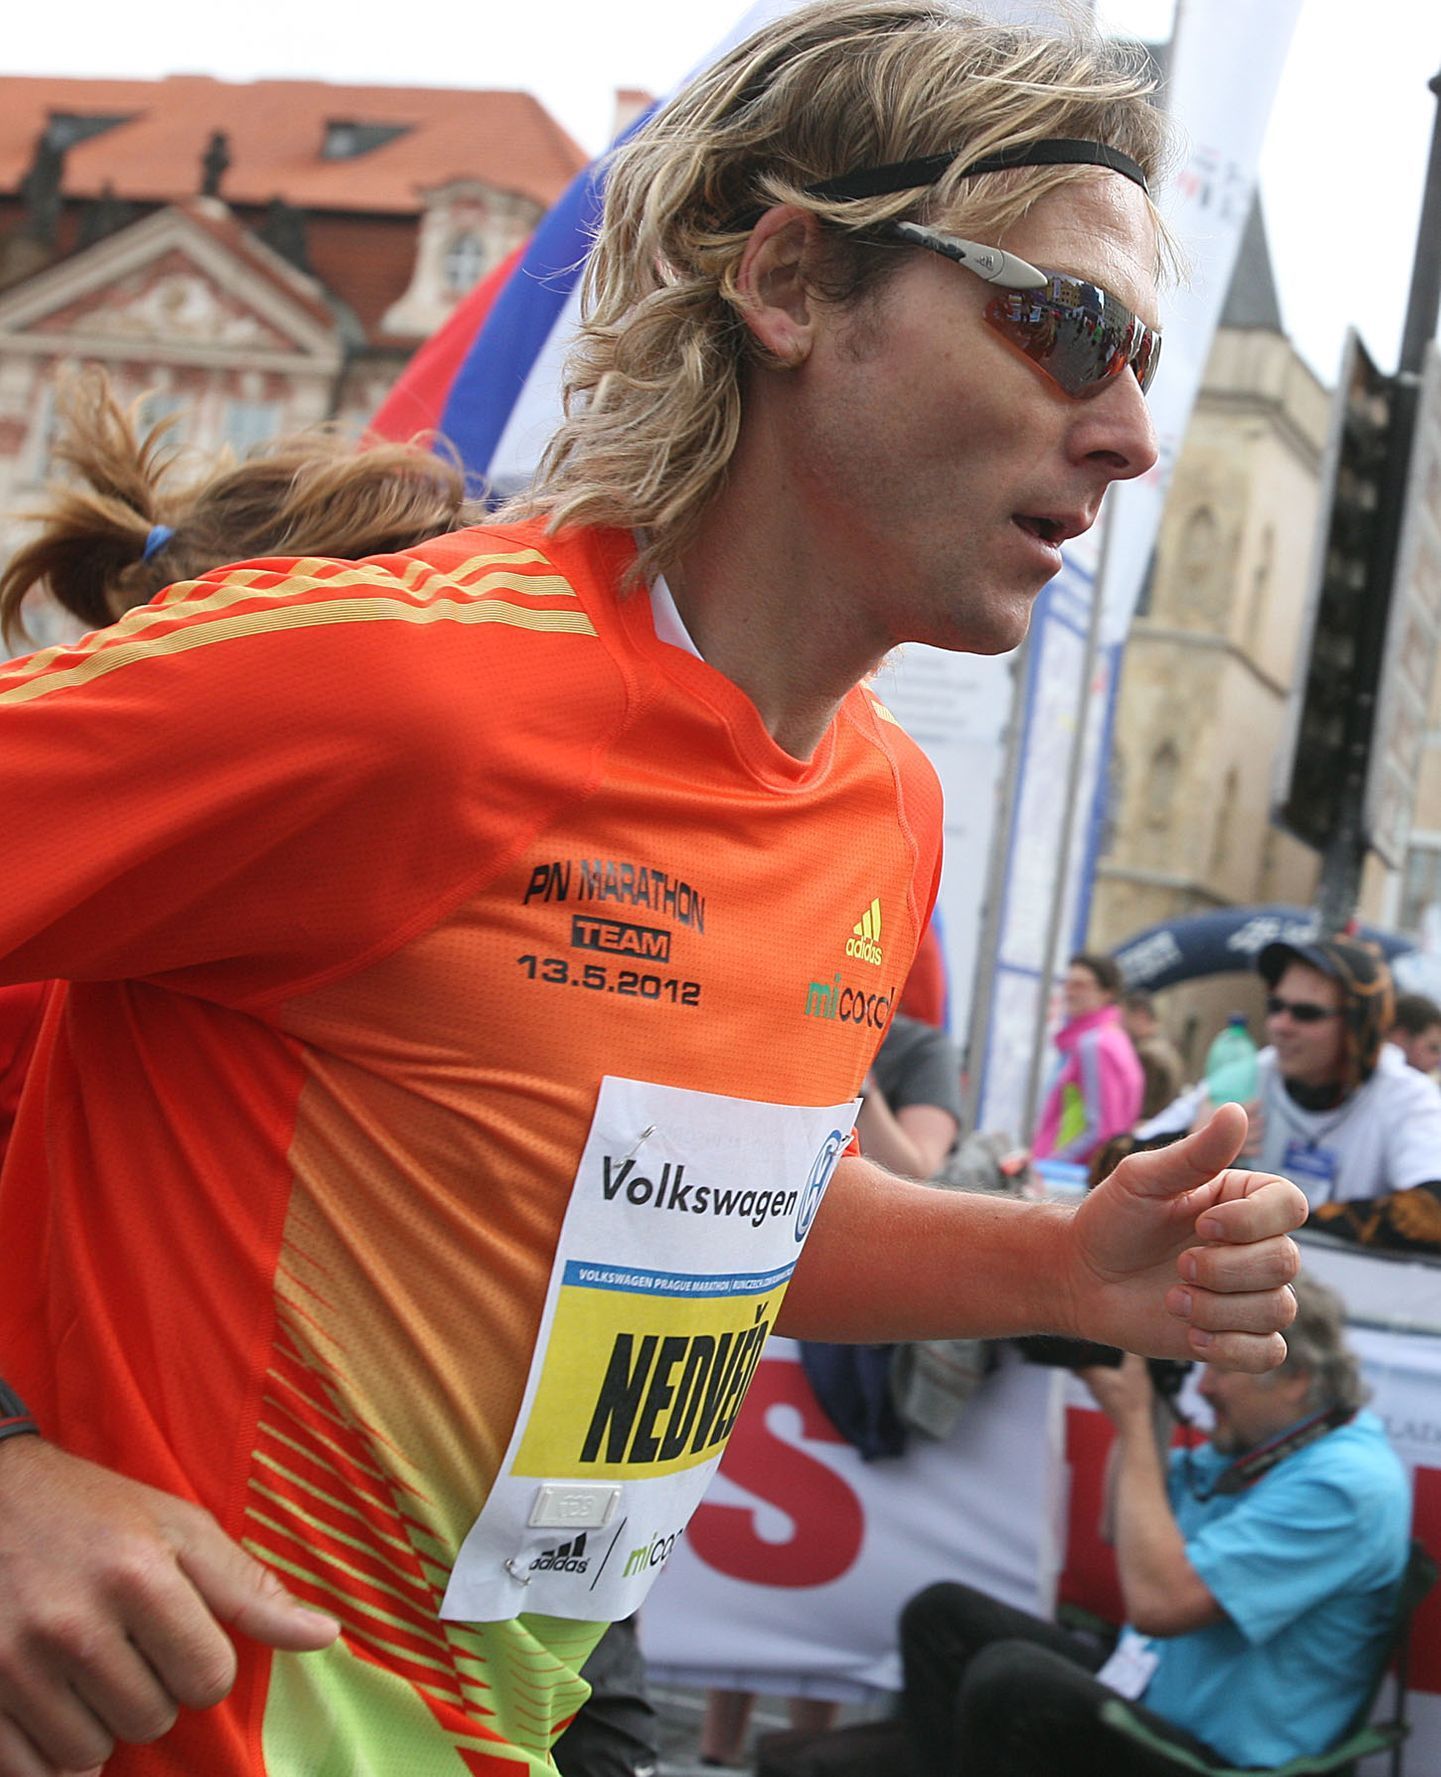 Pražský mezinárodní maraton (Pavel Nedvěd)